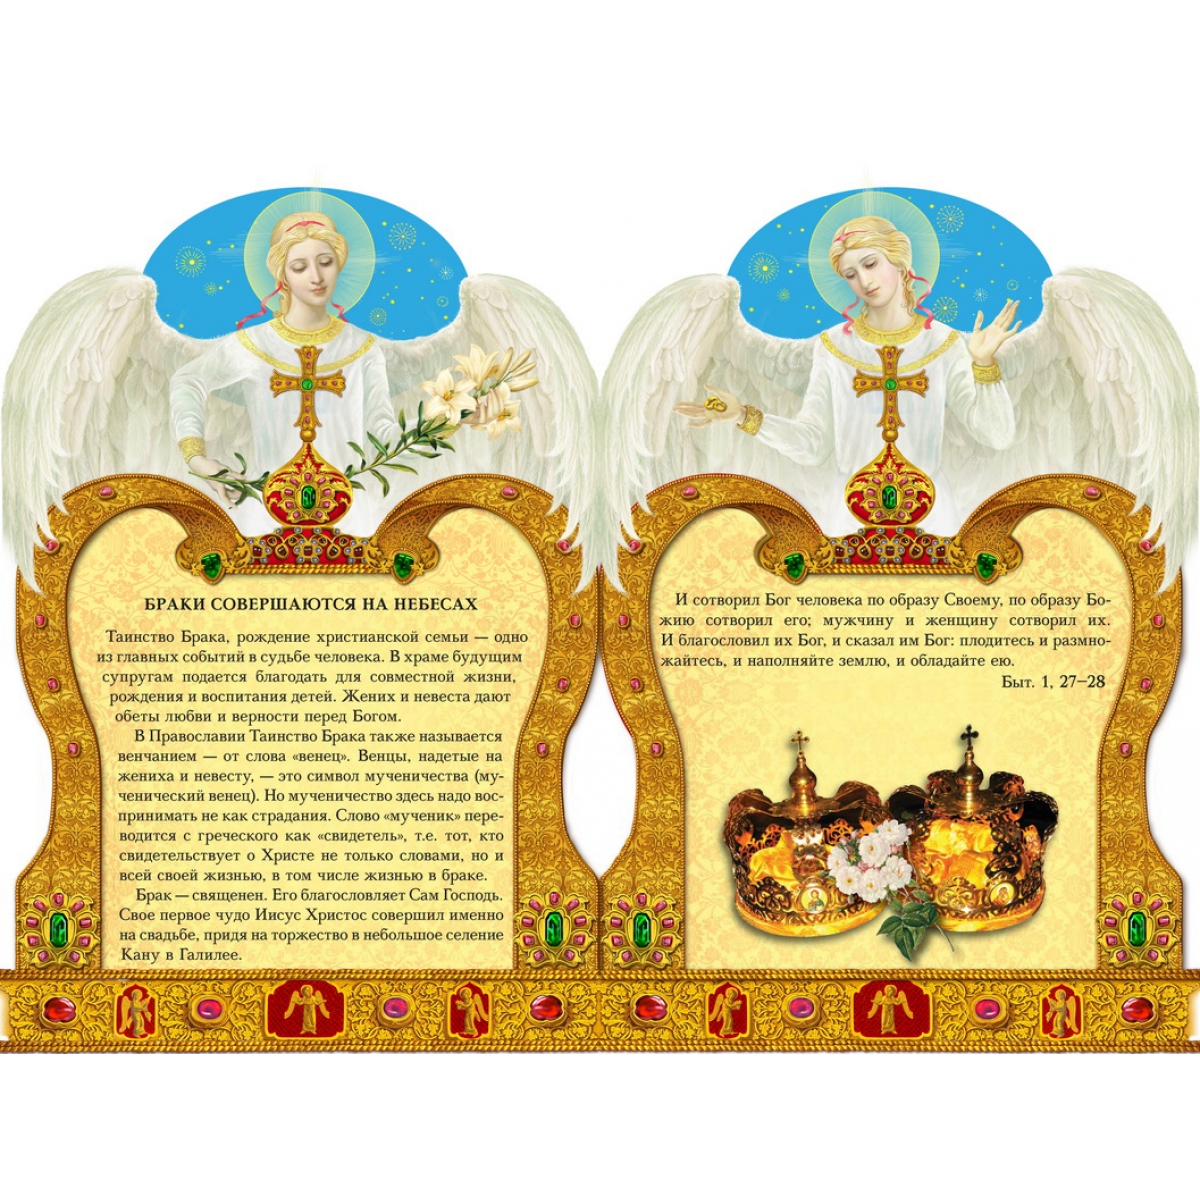 Православное Поздравление С Днем Венчания